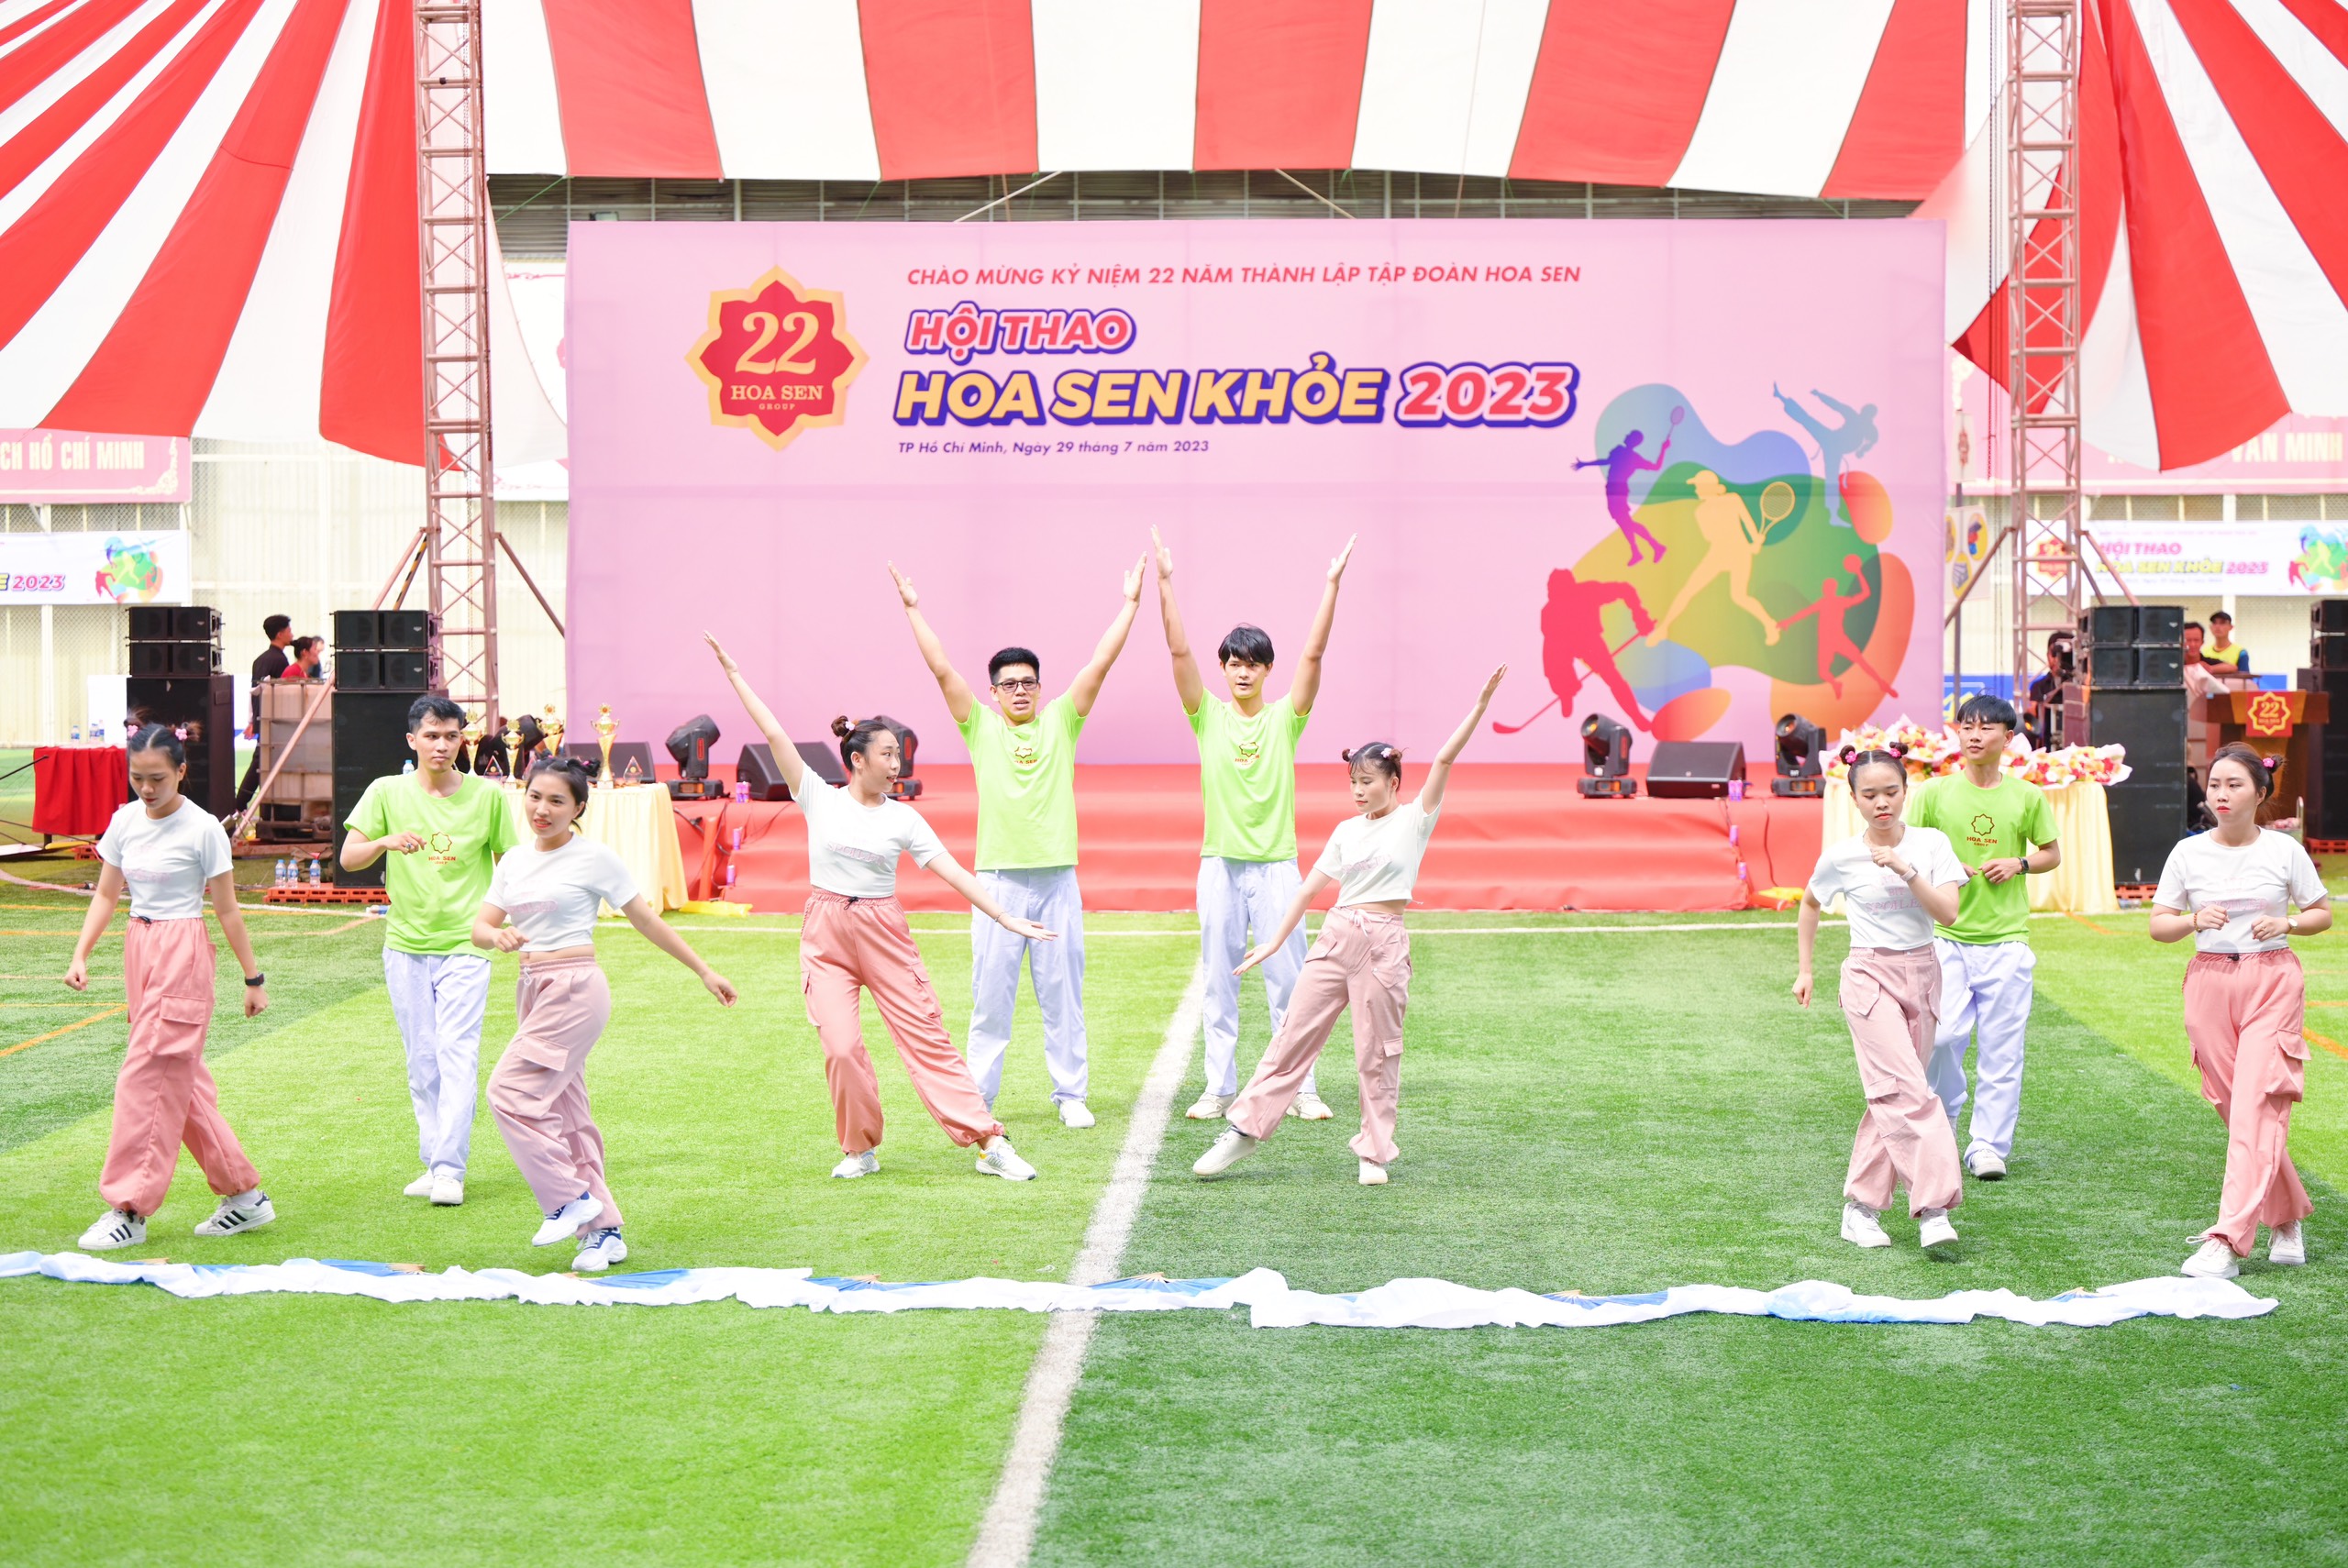 3. Cận cảnh các tiết mục thi đấu hạng mục Nhảy Flashmob tại Hội thao “Hoa Sen Khoẻ 2023” 4